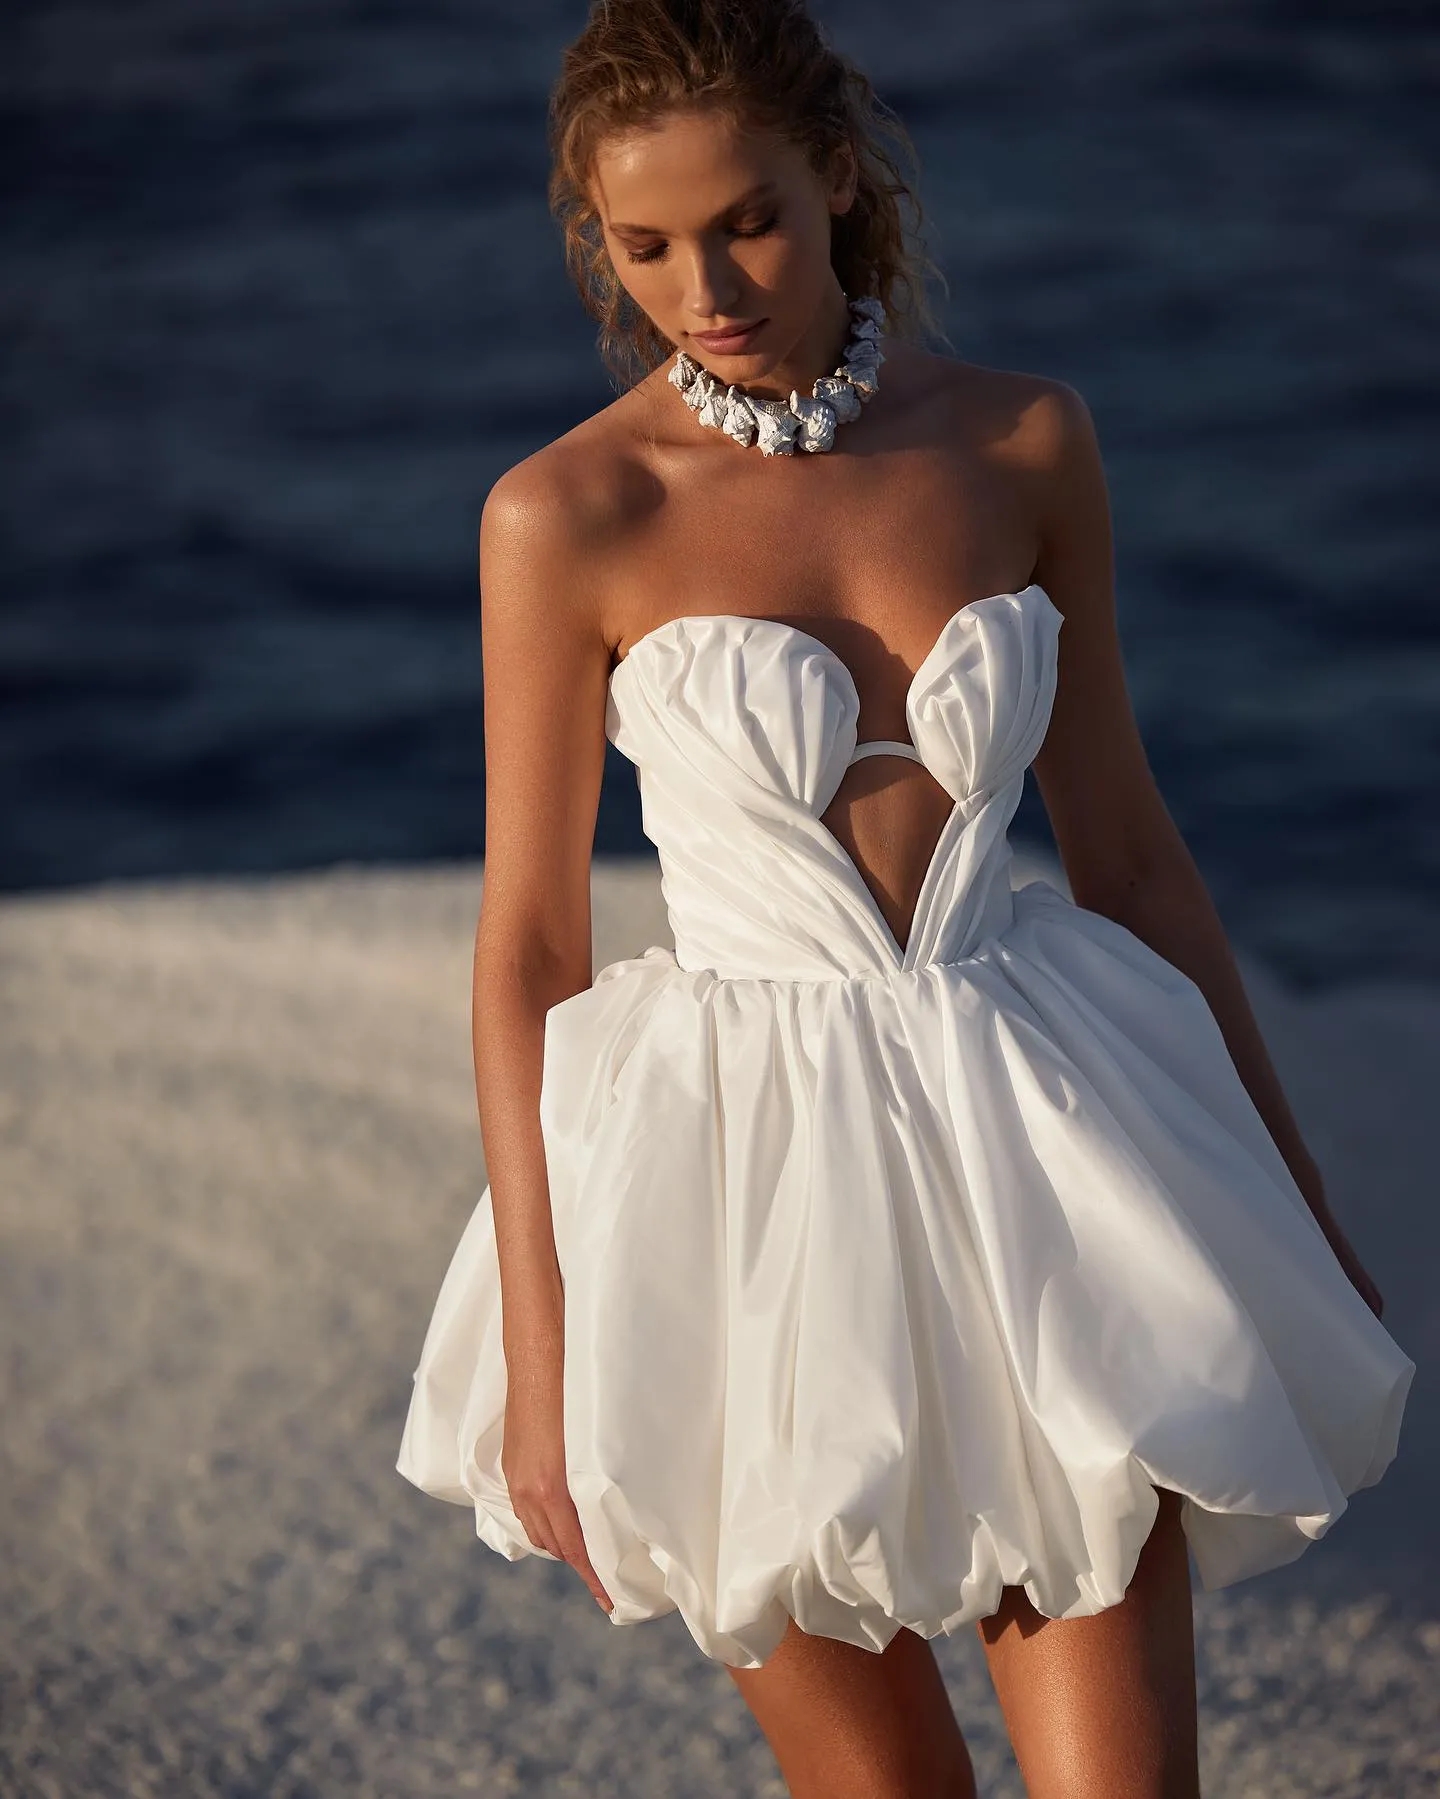 Milla nova krótkie liniowe sukienki ślubne plażowe puszysta satynowa sukienka ślubna koronkowa kule designerskie suknie ślubne